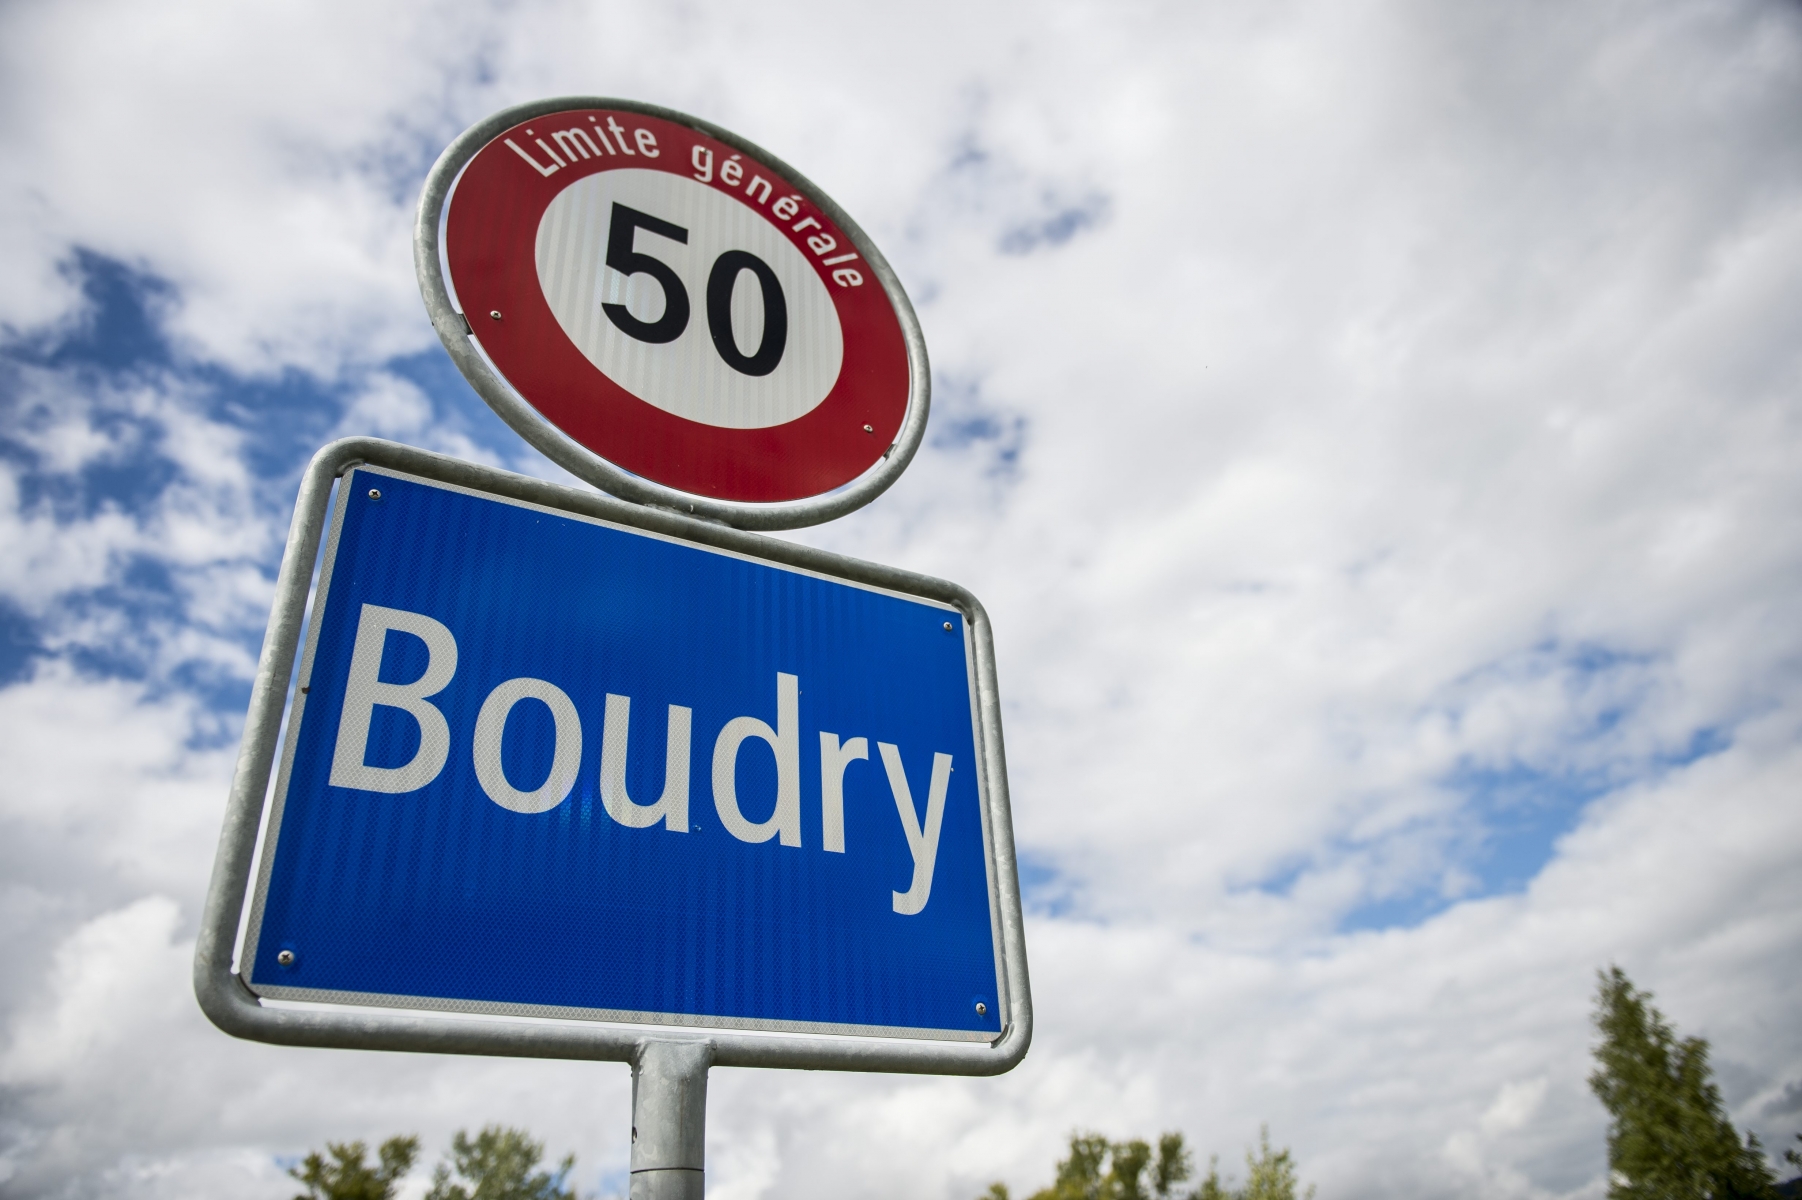 Le drame s'est déroulé à Boudry, lieu de domicile de l'amant de la victime.

Boudry, le 15.09.2015

Photo : Lucas Vuitel